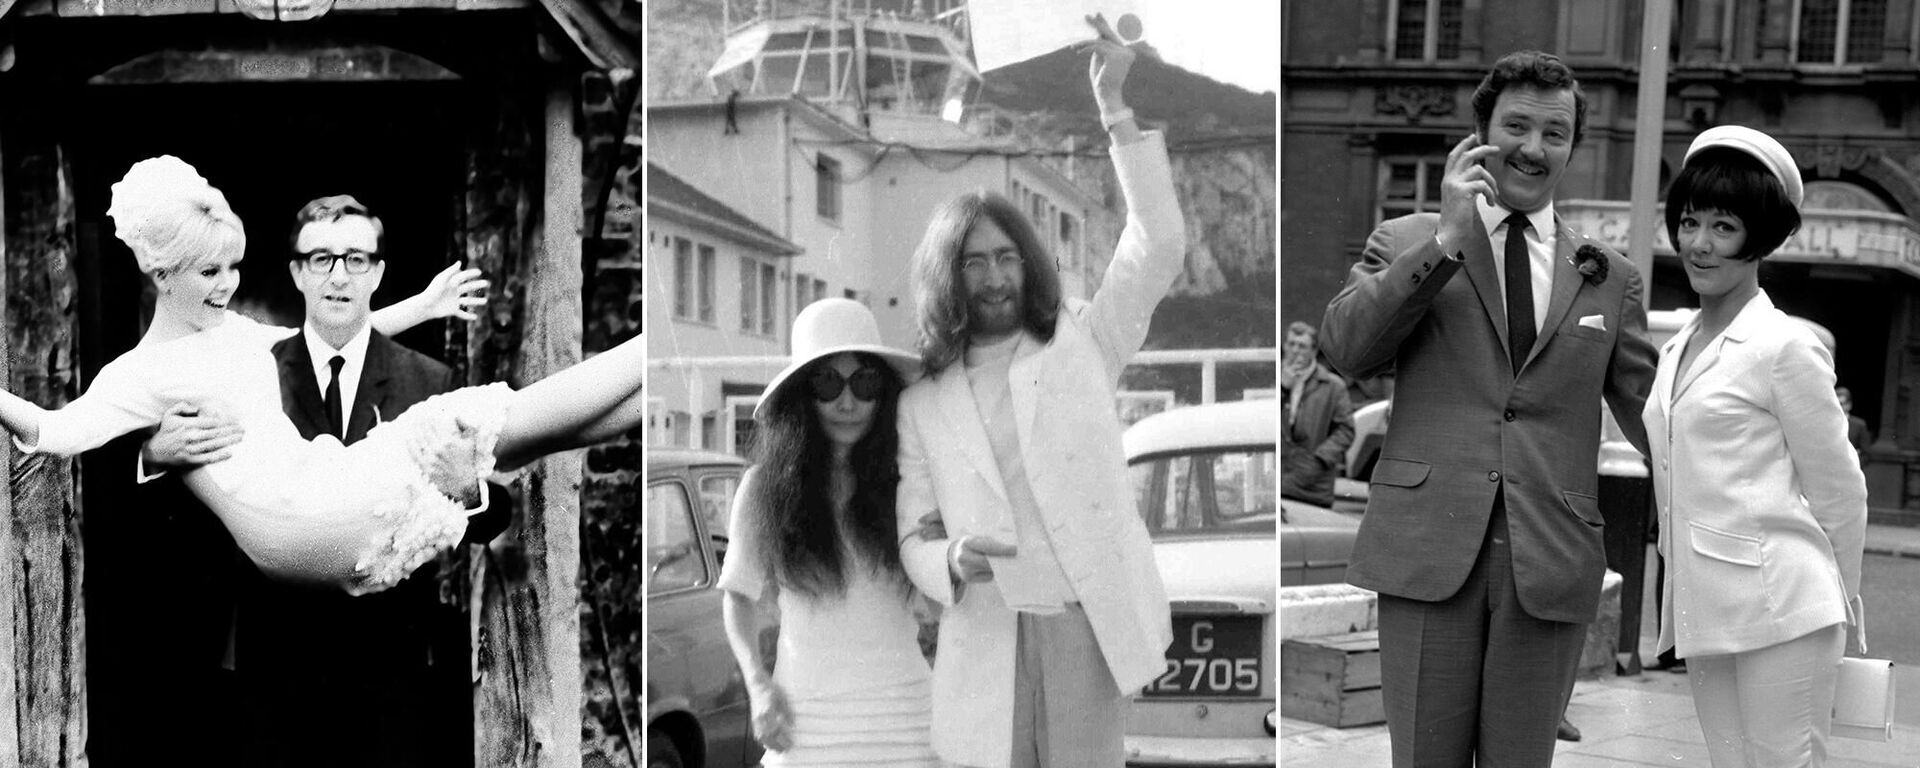 На фото: (слева) Шведская актриса Бритт Экланд с мужем британским актером Питером Селлерсом, 19 февраля 1964 года; (в центре) японская художница Йоко Оно после свадьбы с британским рок-музыкантом и участником группы The Beatles Джоном Ленноном, 20 марта 1969 года; (справа) английская актриса Аманда Барри с мужем актером Робином Хантером, 19 июня 1967 года - Sputnik Абхазия, 1920, 17.09.2020